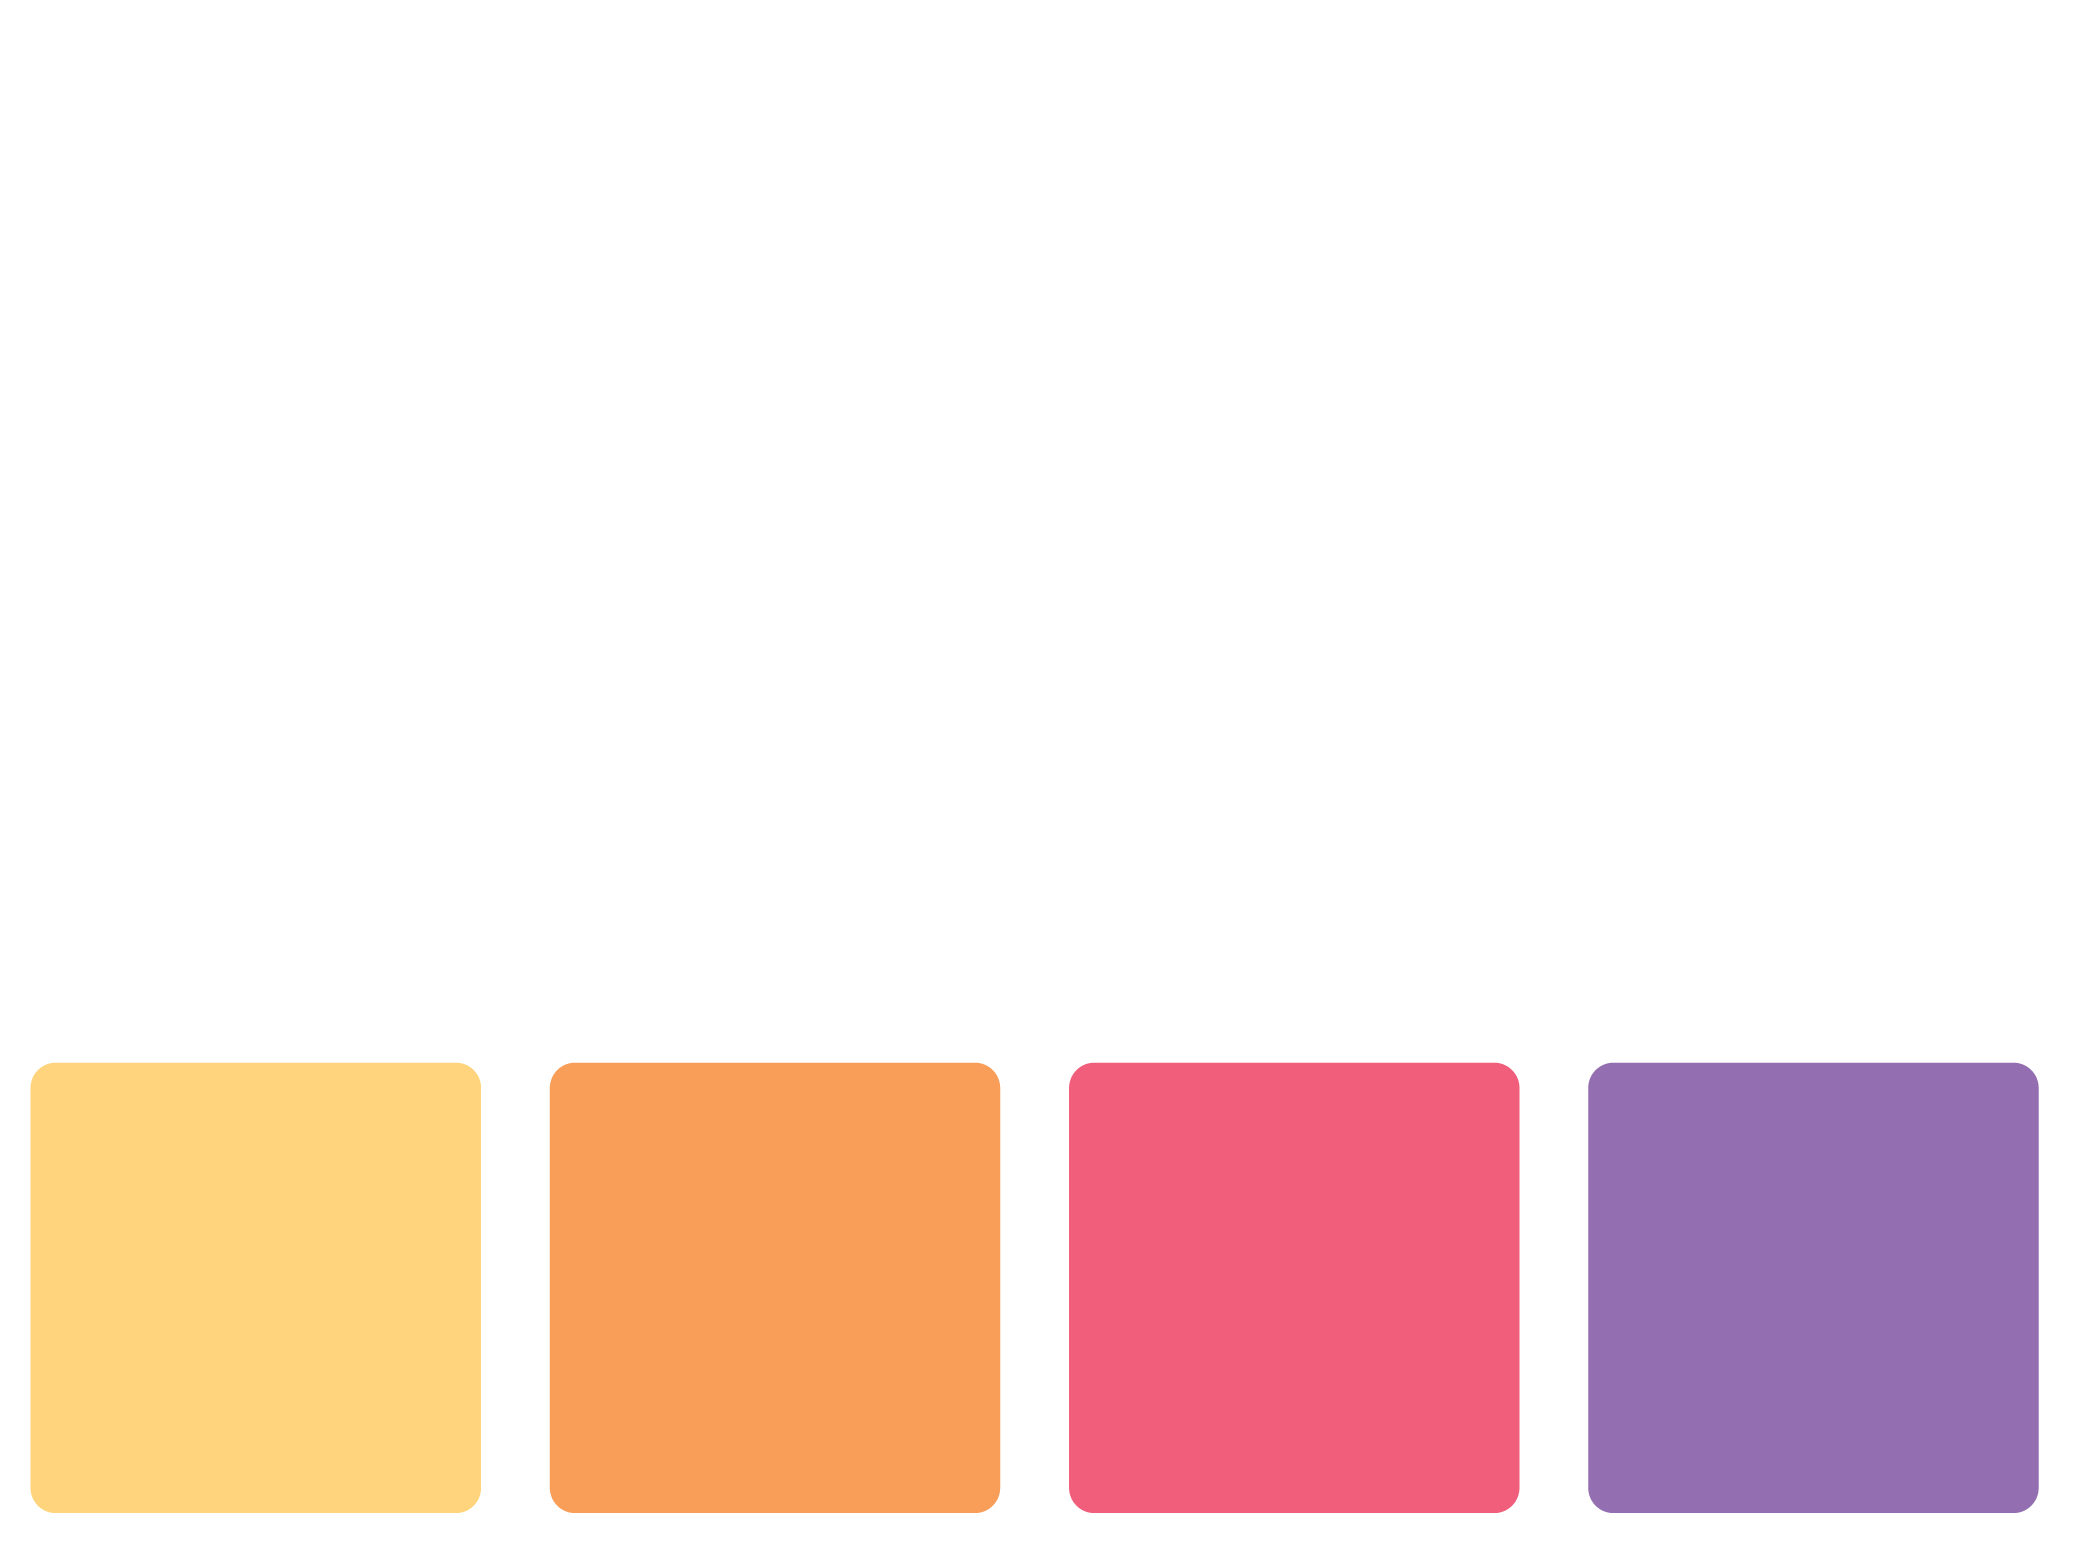 Zonex